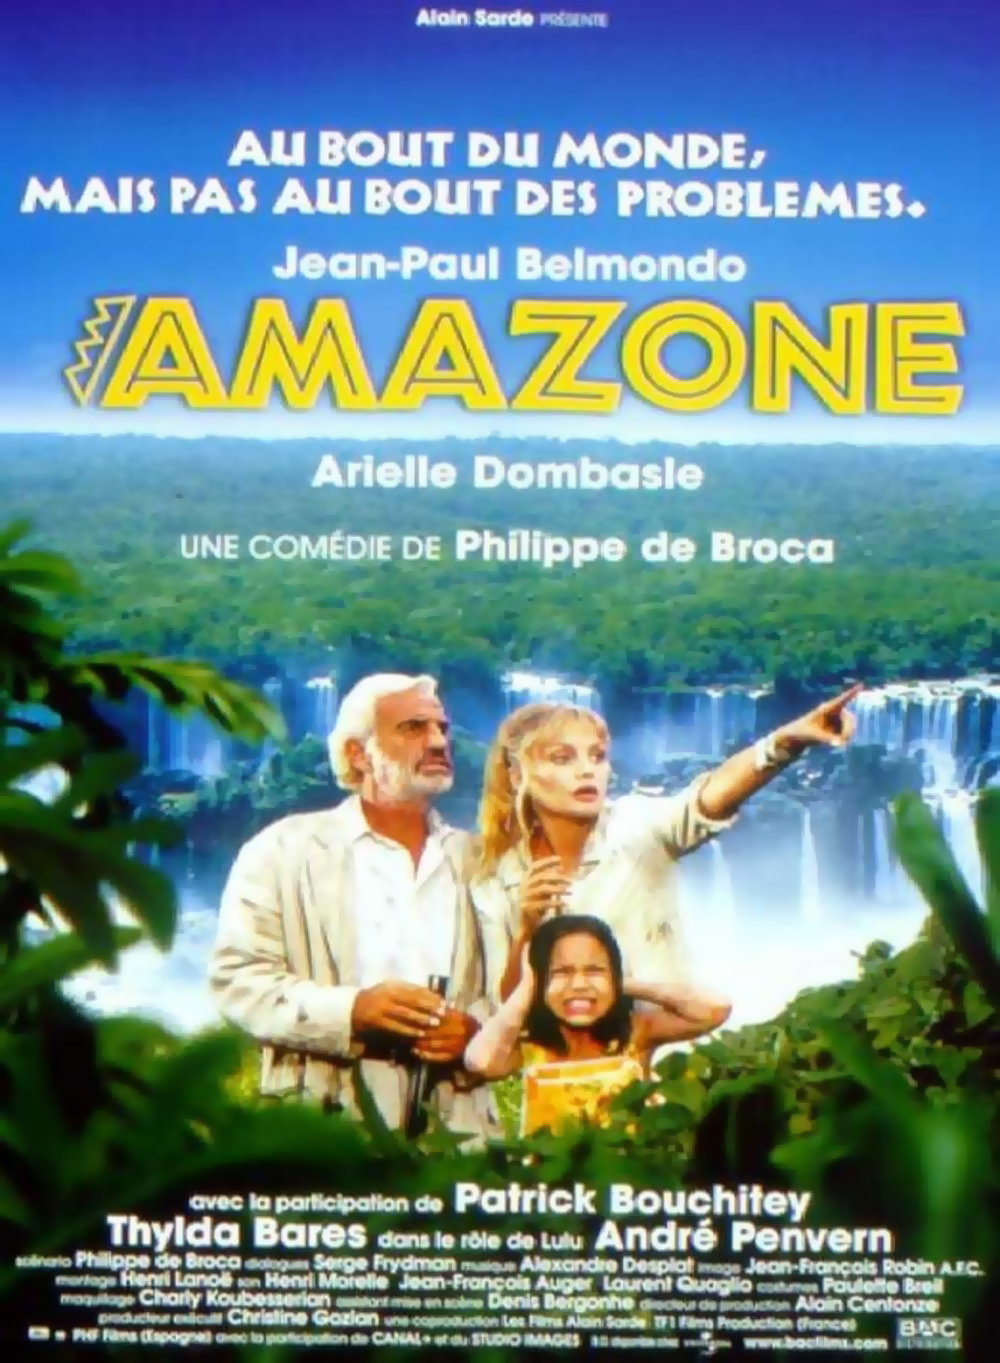 e - film 2000 - AlloCiné